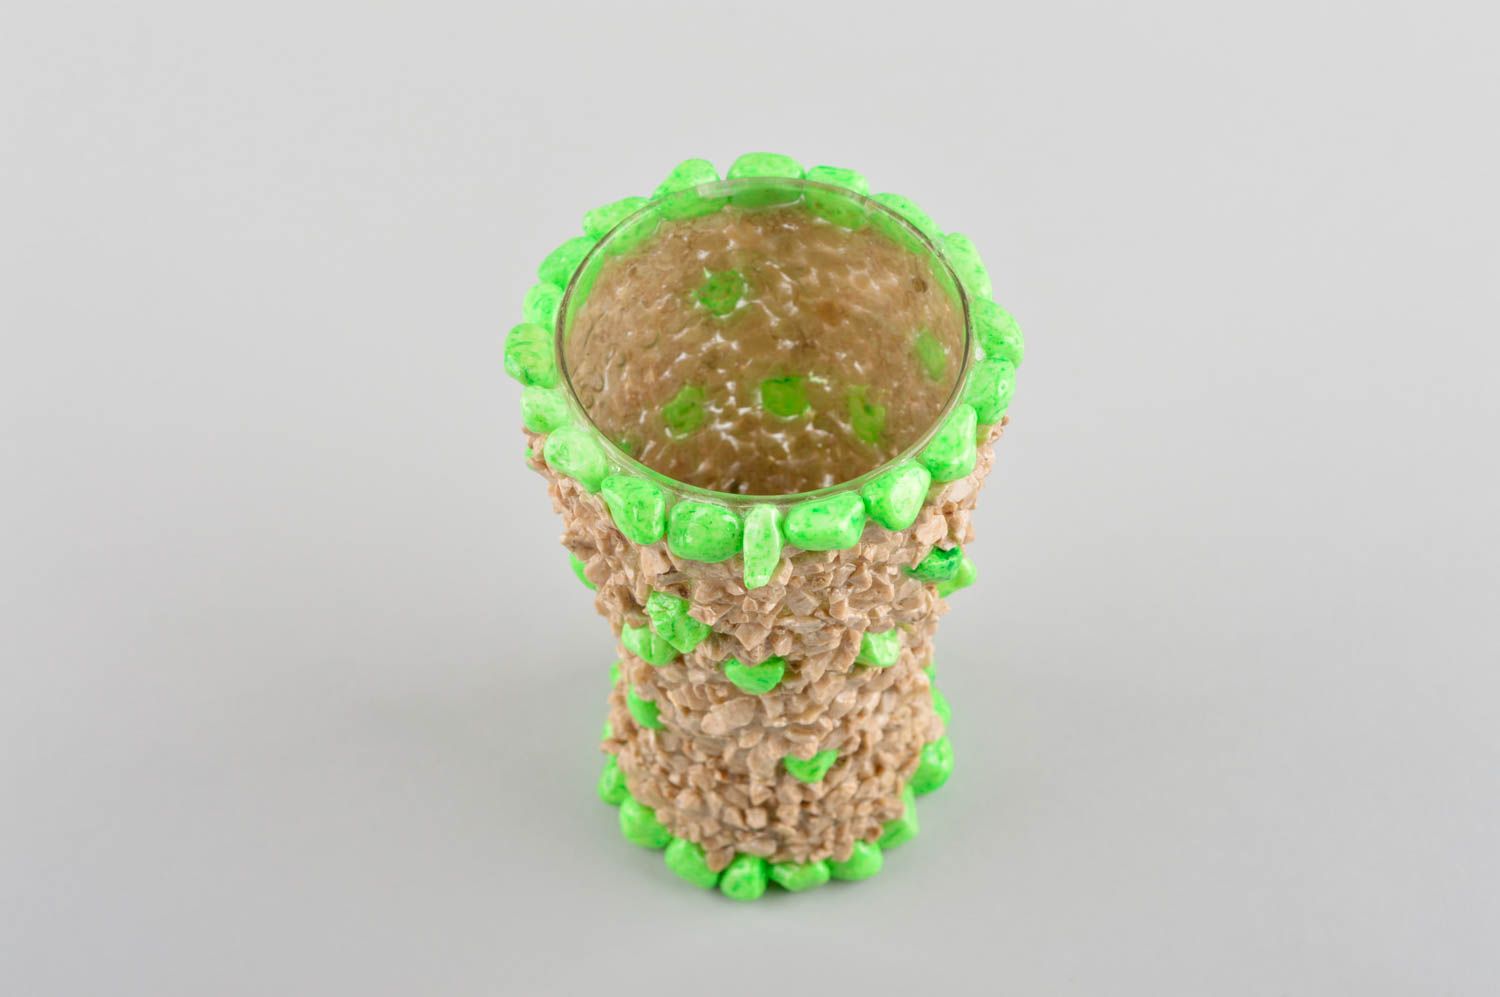 Vaso de cristal artesanal y decorado utensilio de cocina elemento decorativo foto 3